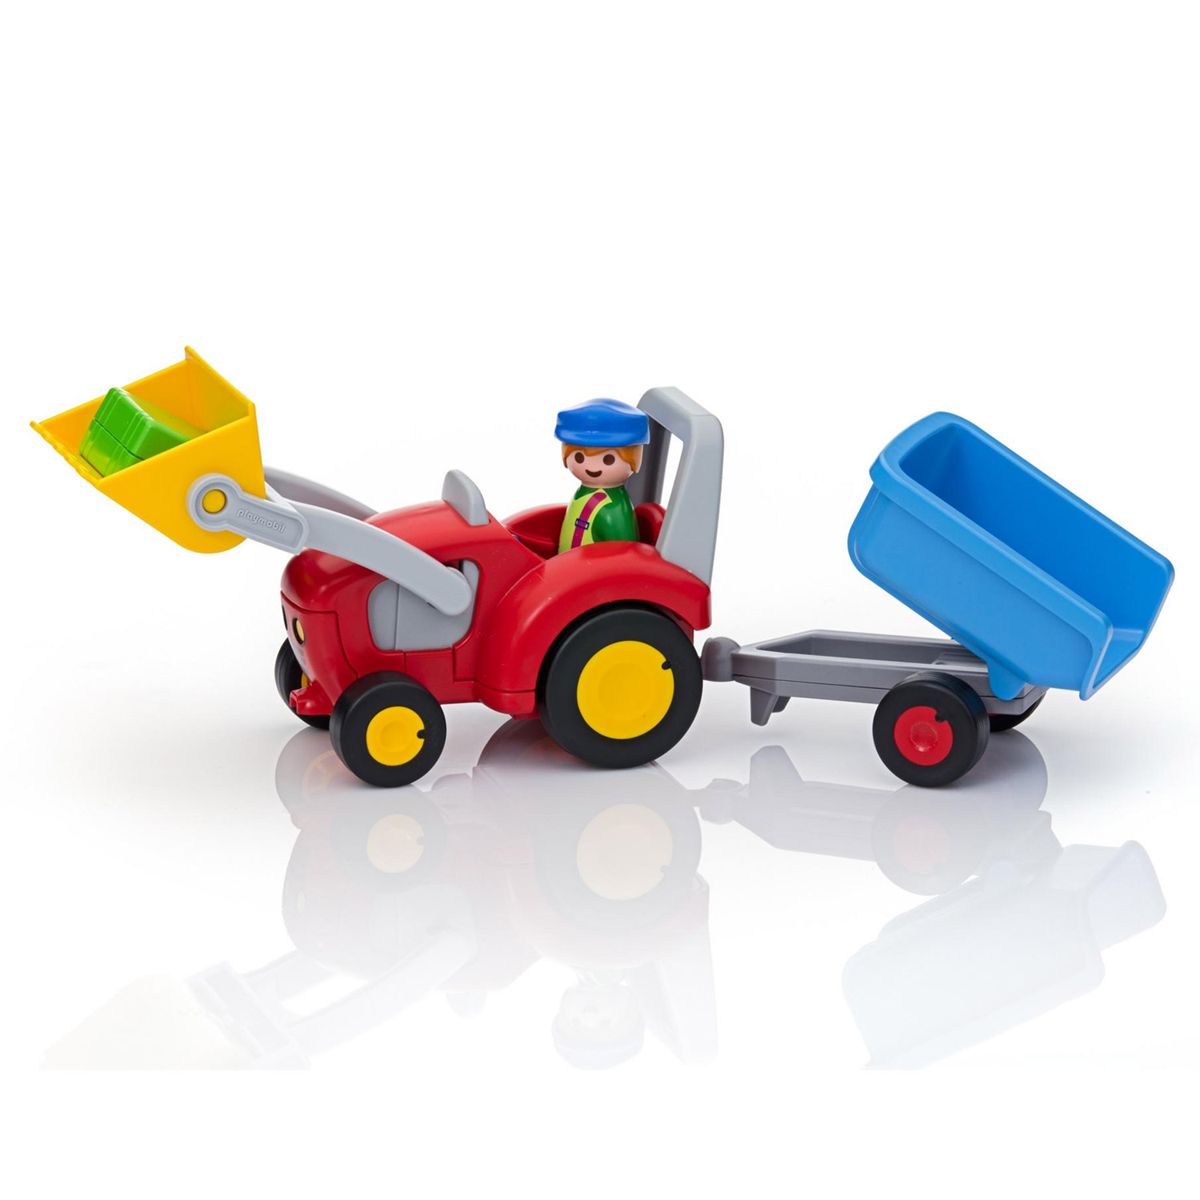 Fermier avec tracteur et remorque 6964 Playmobil 1.2.3